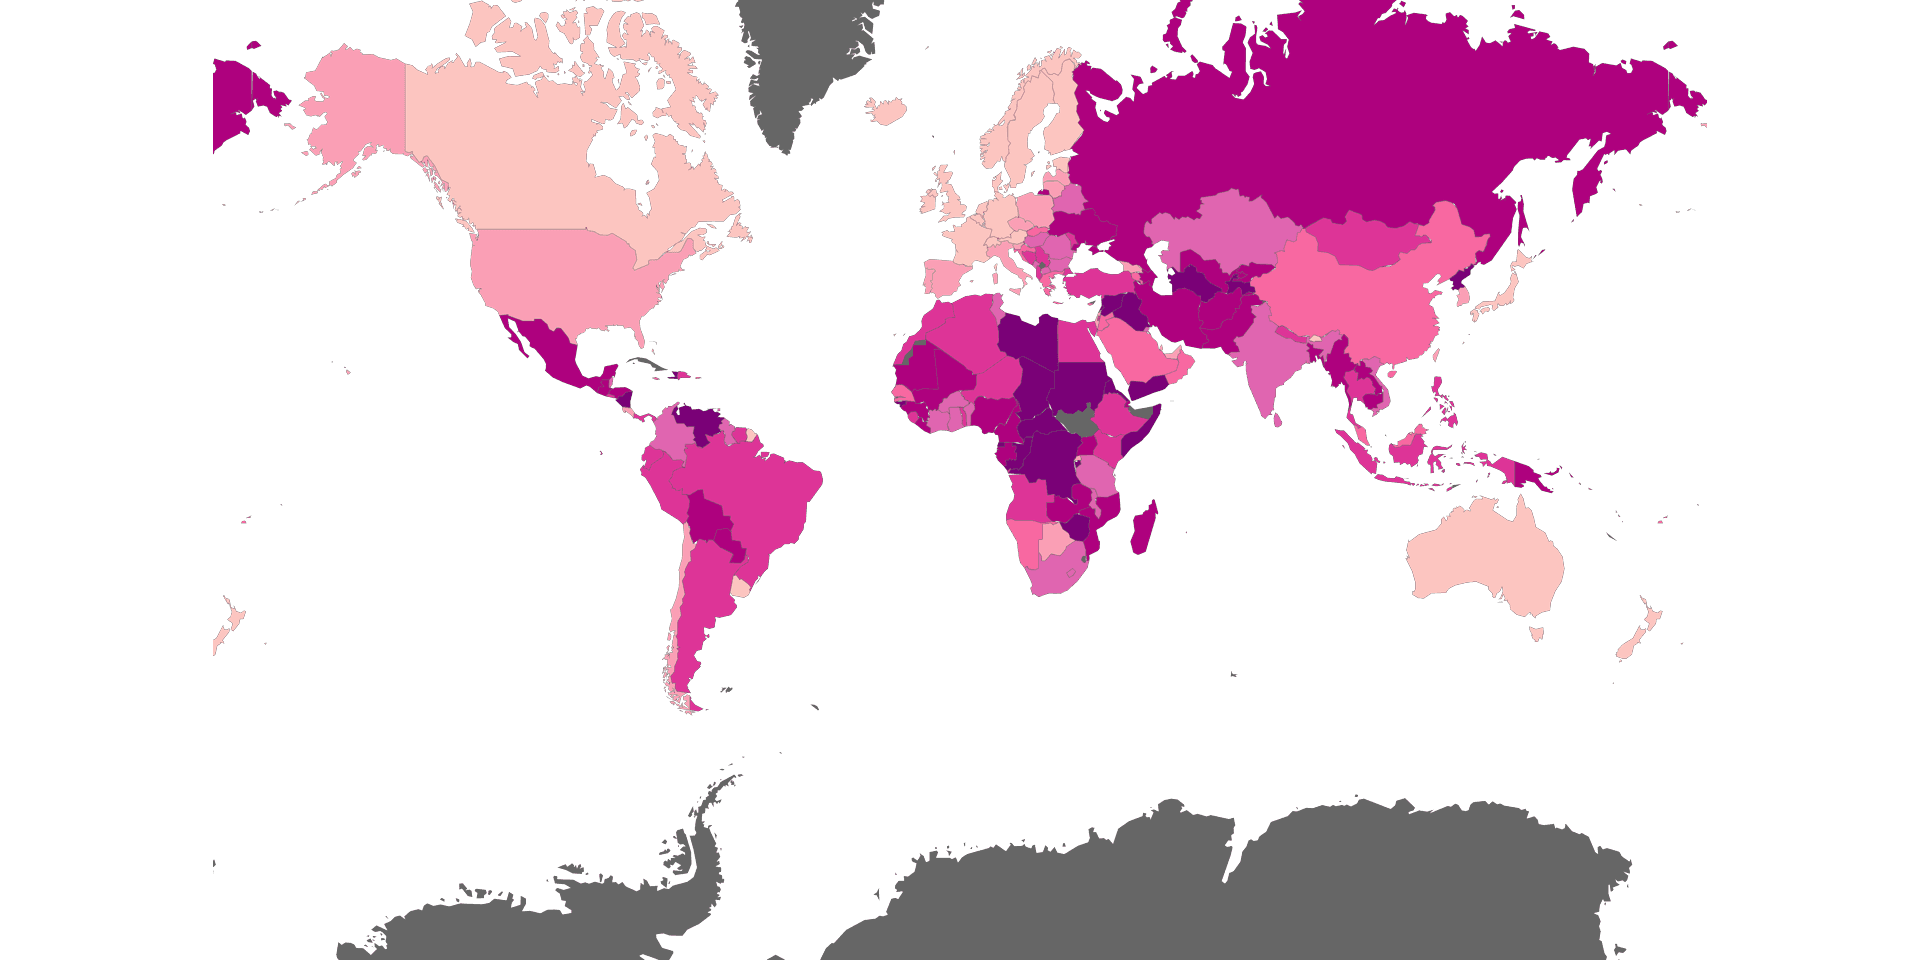 Global Corruption Index